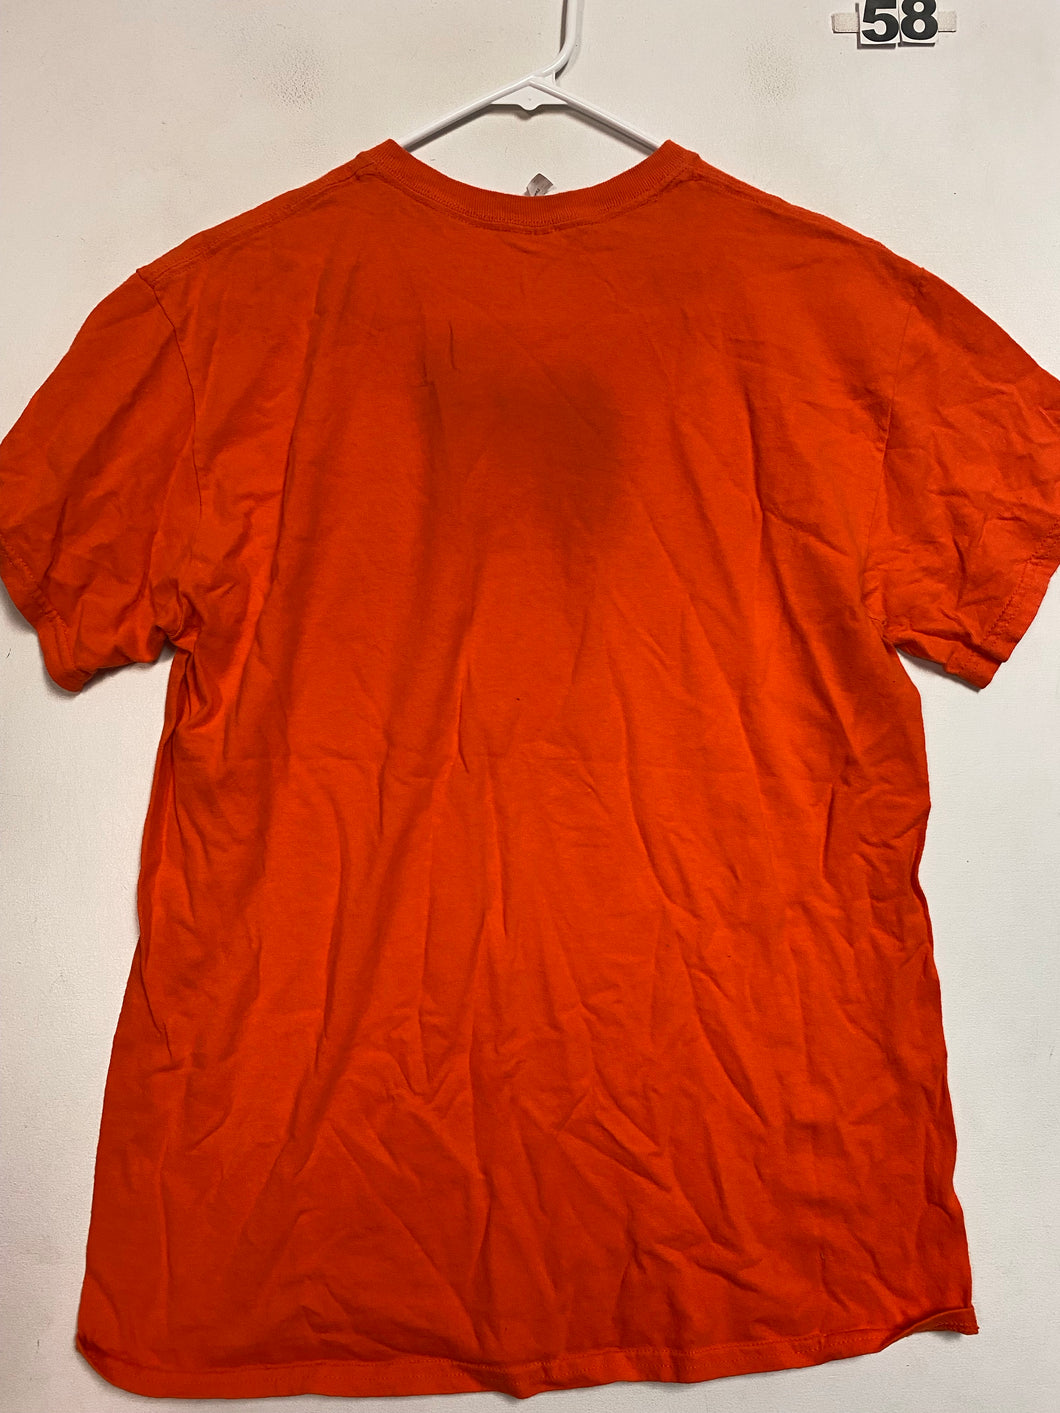 Men’s M Orange Shirt